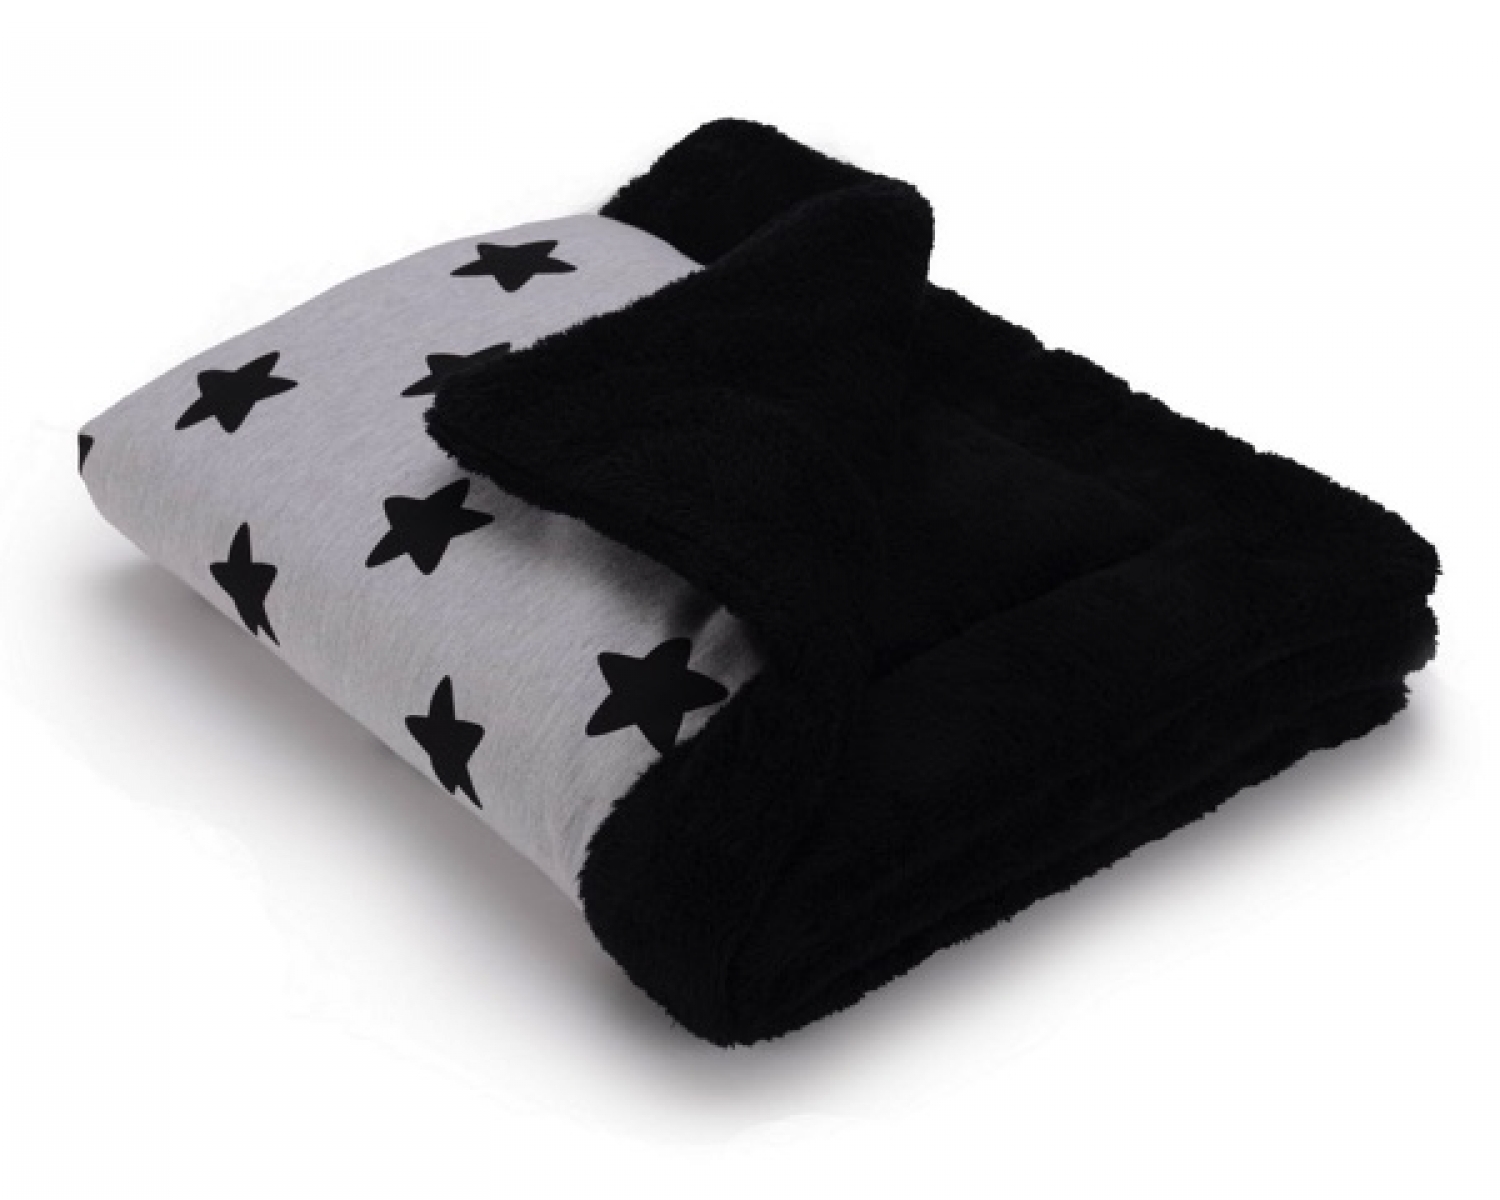 Теплый плед Cottonmoose KO 743/29/74 black star cotton jersey (светло-серый (черные звезды) с черным)